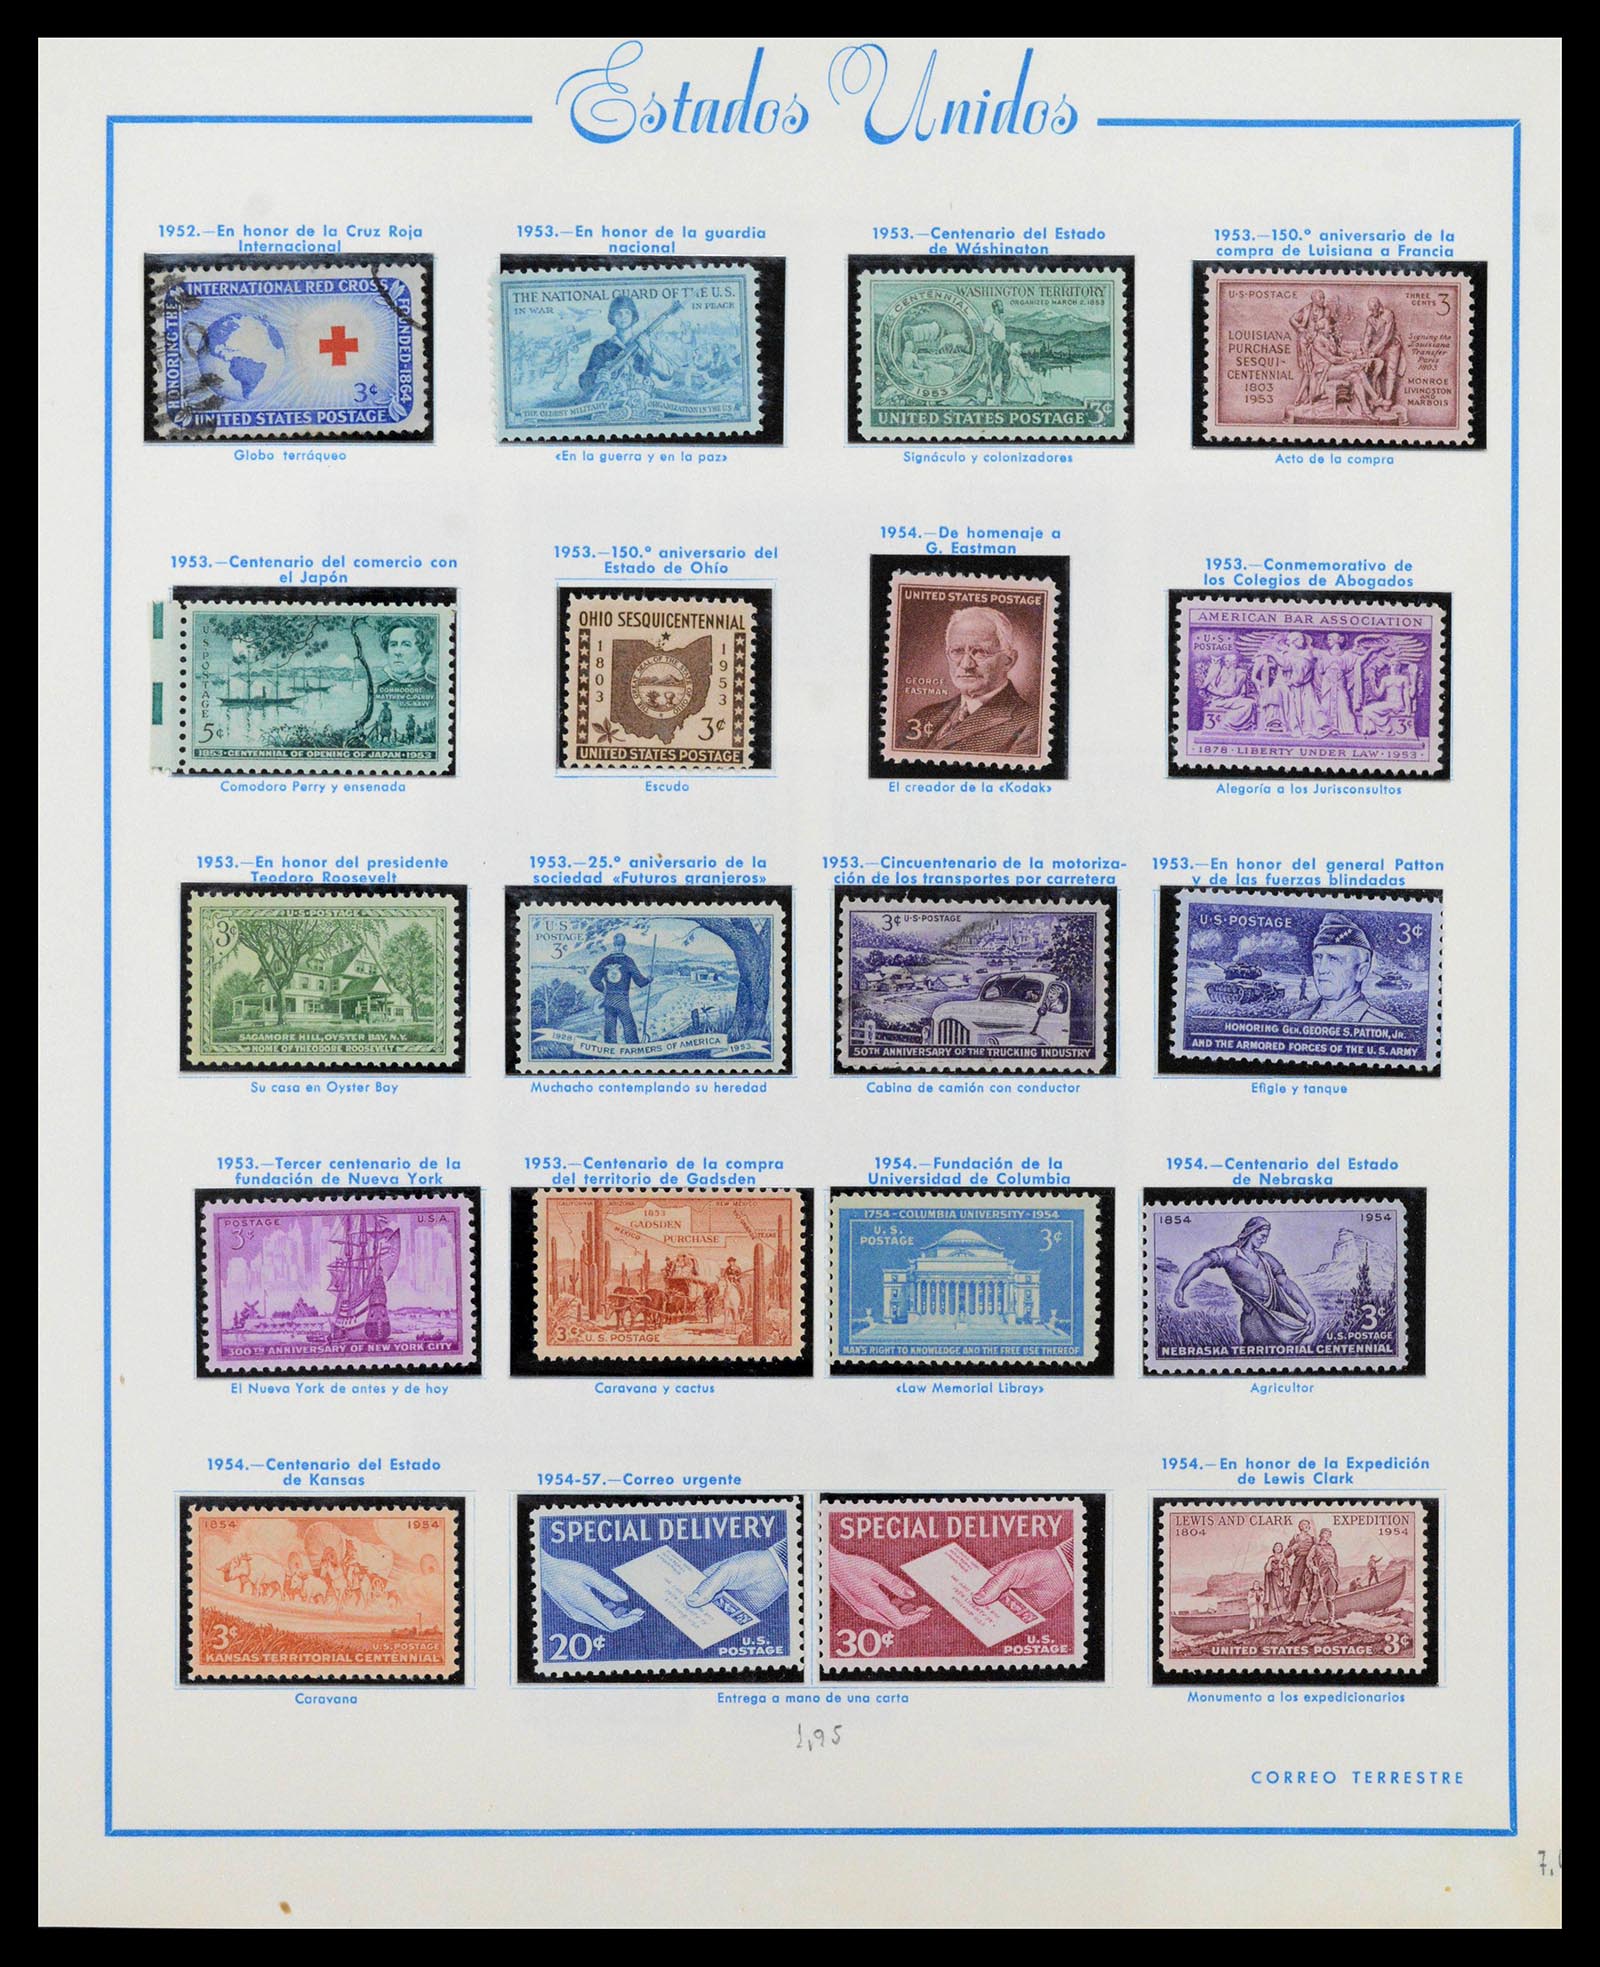 39190 0031 - Stamp collection 39190 USA 1851-1975.